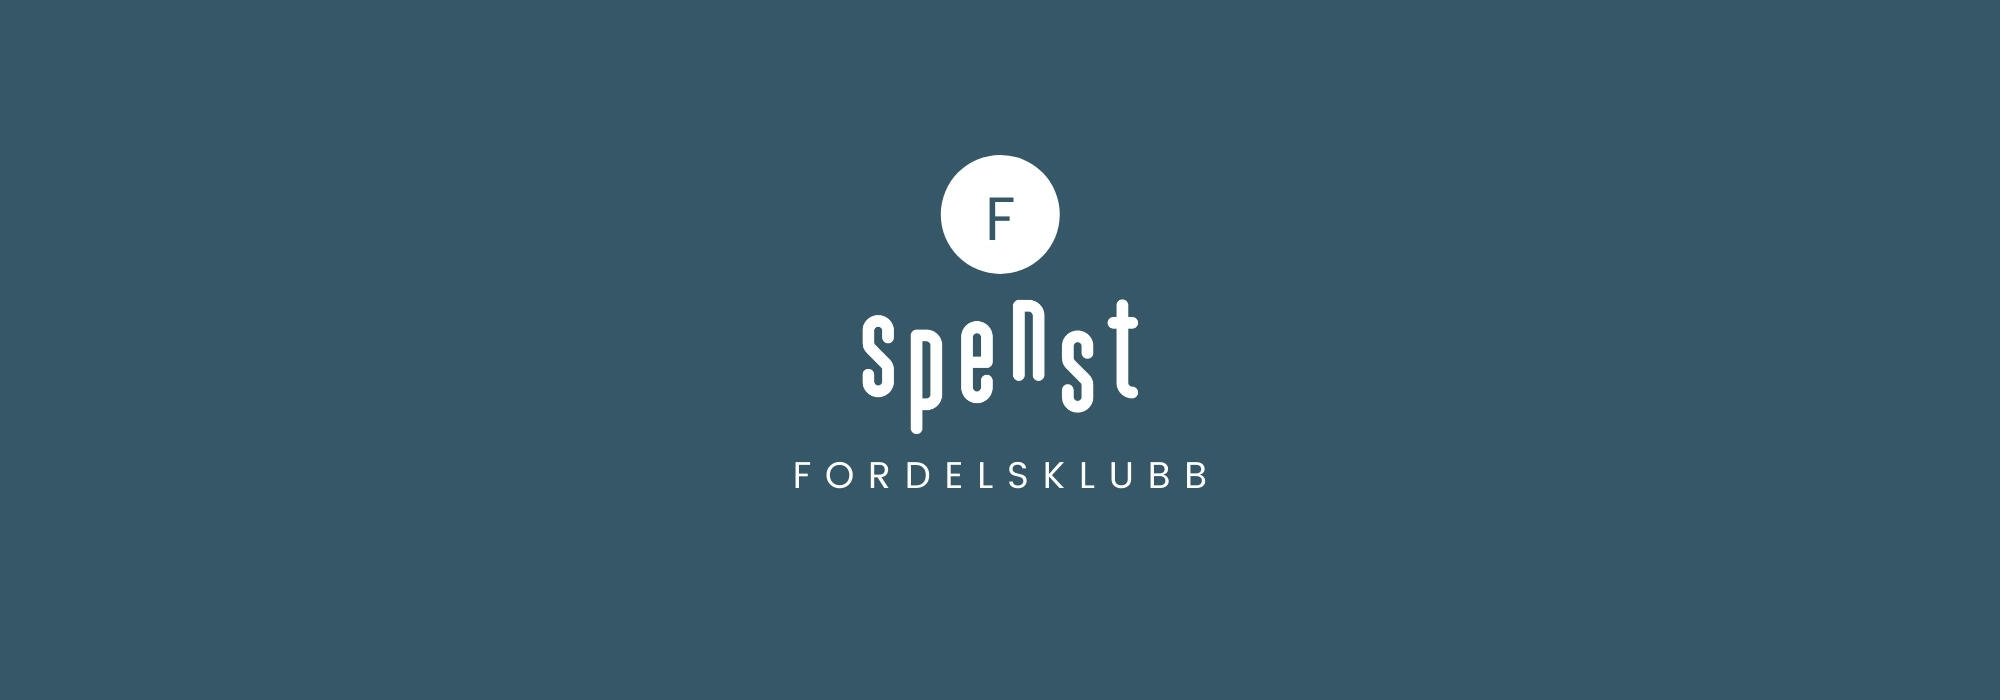 Fordelsklubb logo